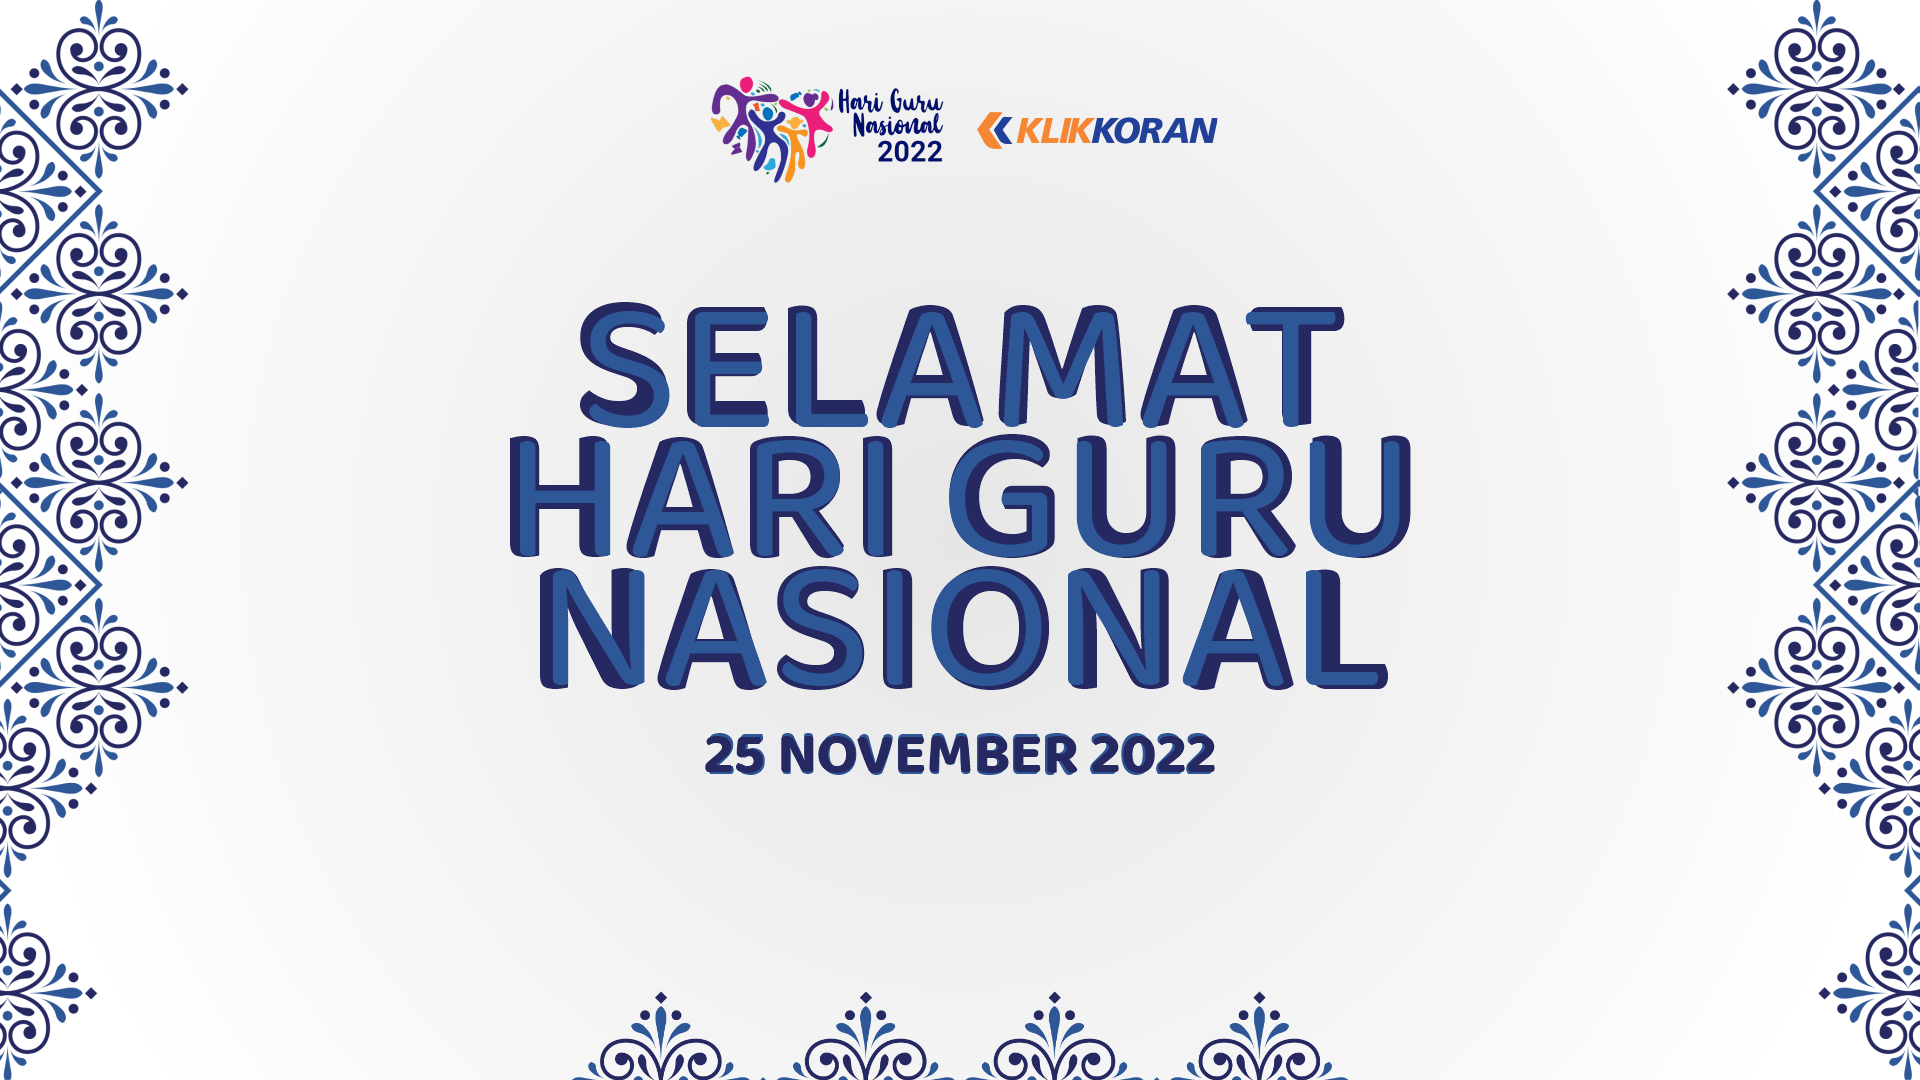 Logo Hari Guru Nasional 25 November 2022 (Foto: Kemendikbud/Klikkoran)Logo Hari Guru Nasional 2022 dari Kementrian Agama